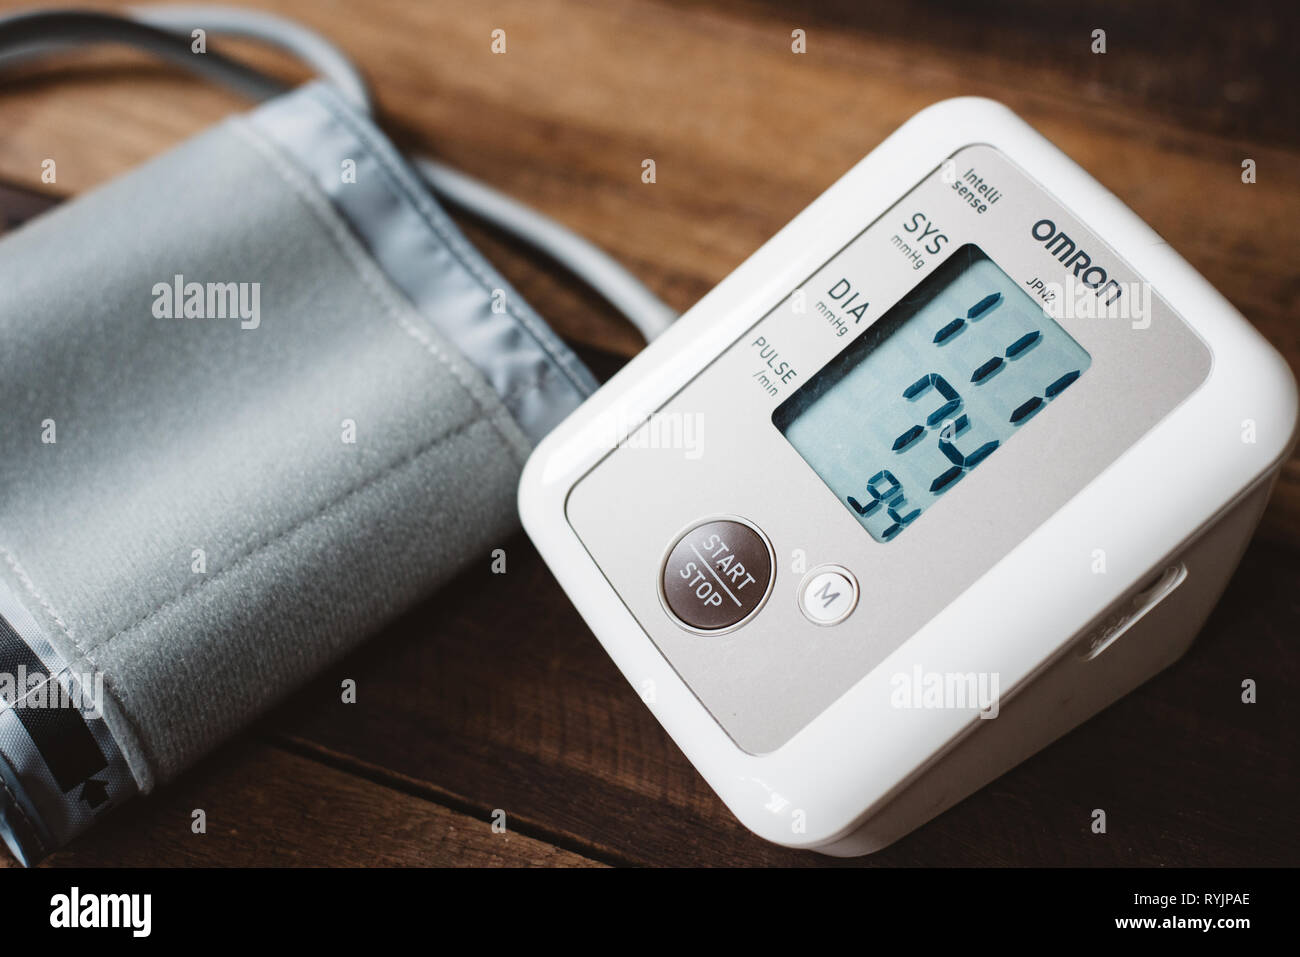 Petaling Jaya, Selangor, Malaysia - 14. März 2019: Blutdruckmessgerät oder elektronische Blutdruck von Marke OMRON auf einem Schreibtisch aus Holz. Omron ist ein Gut k Stockfoto